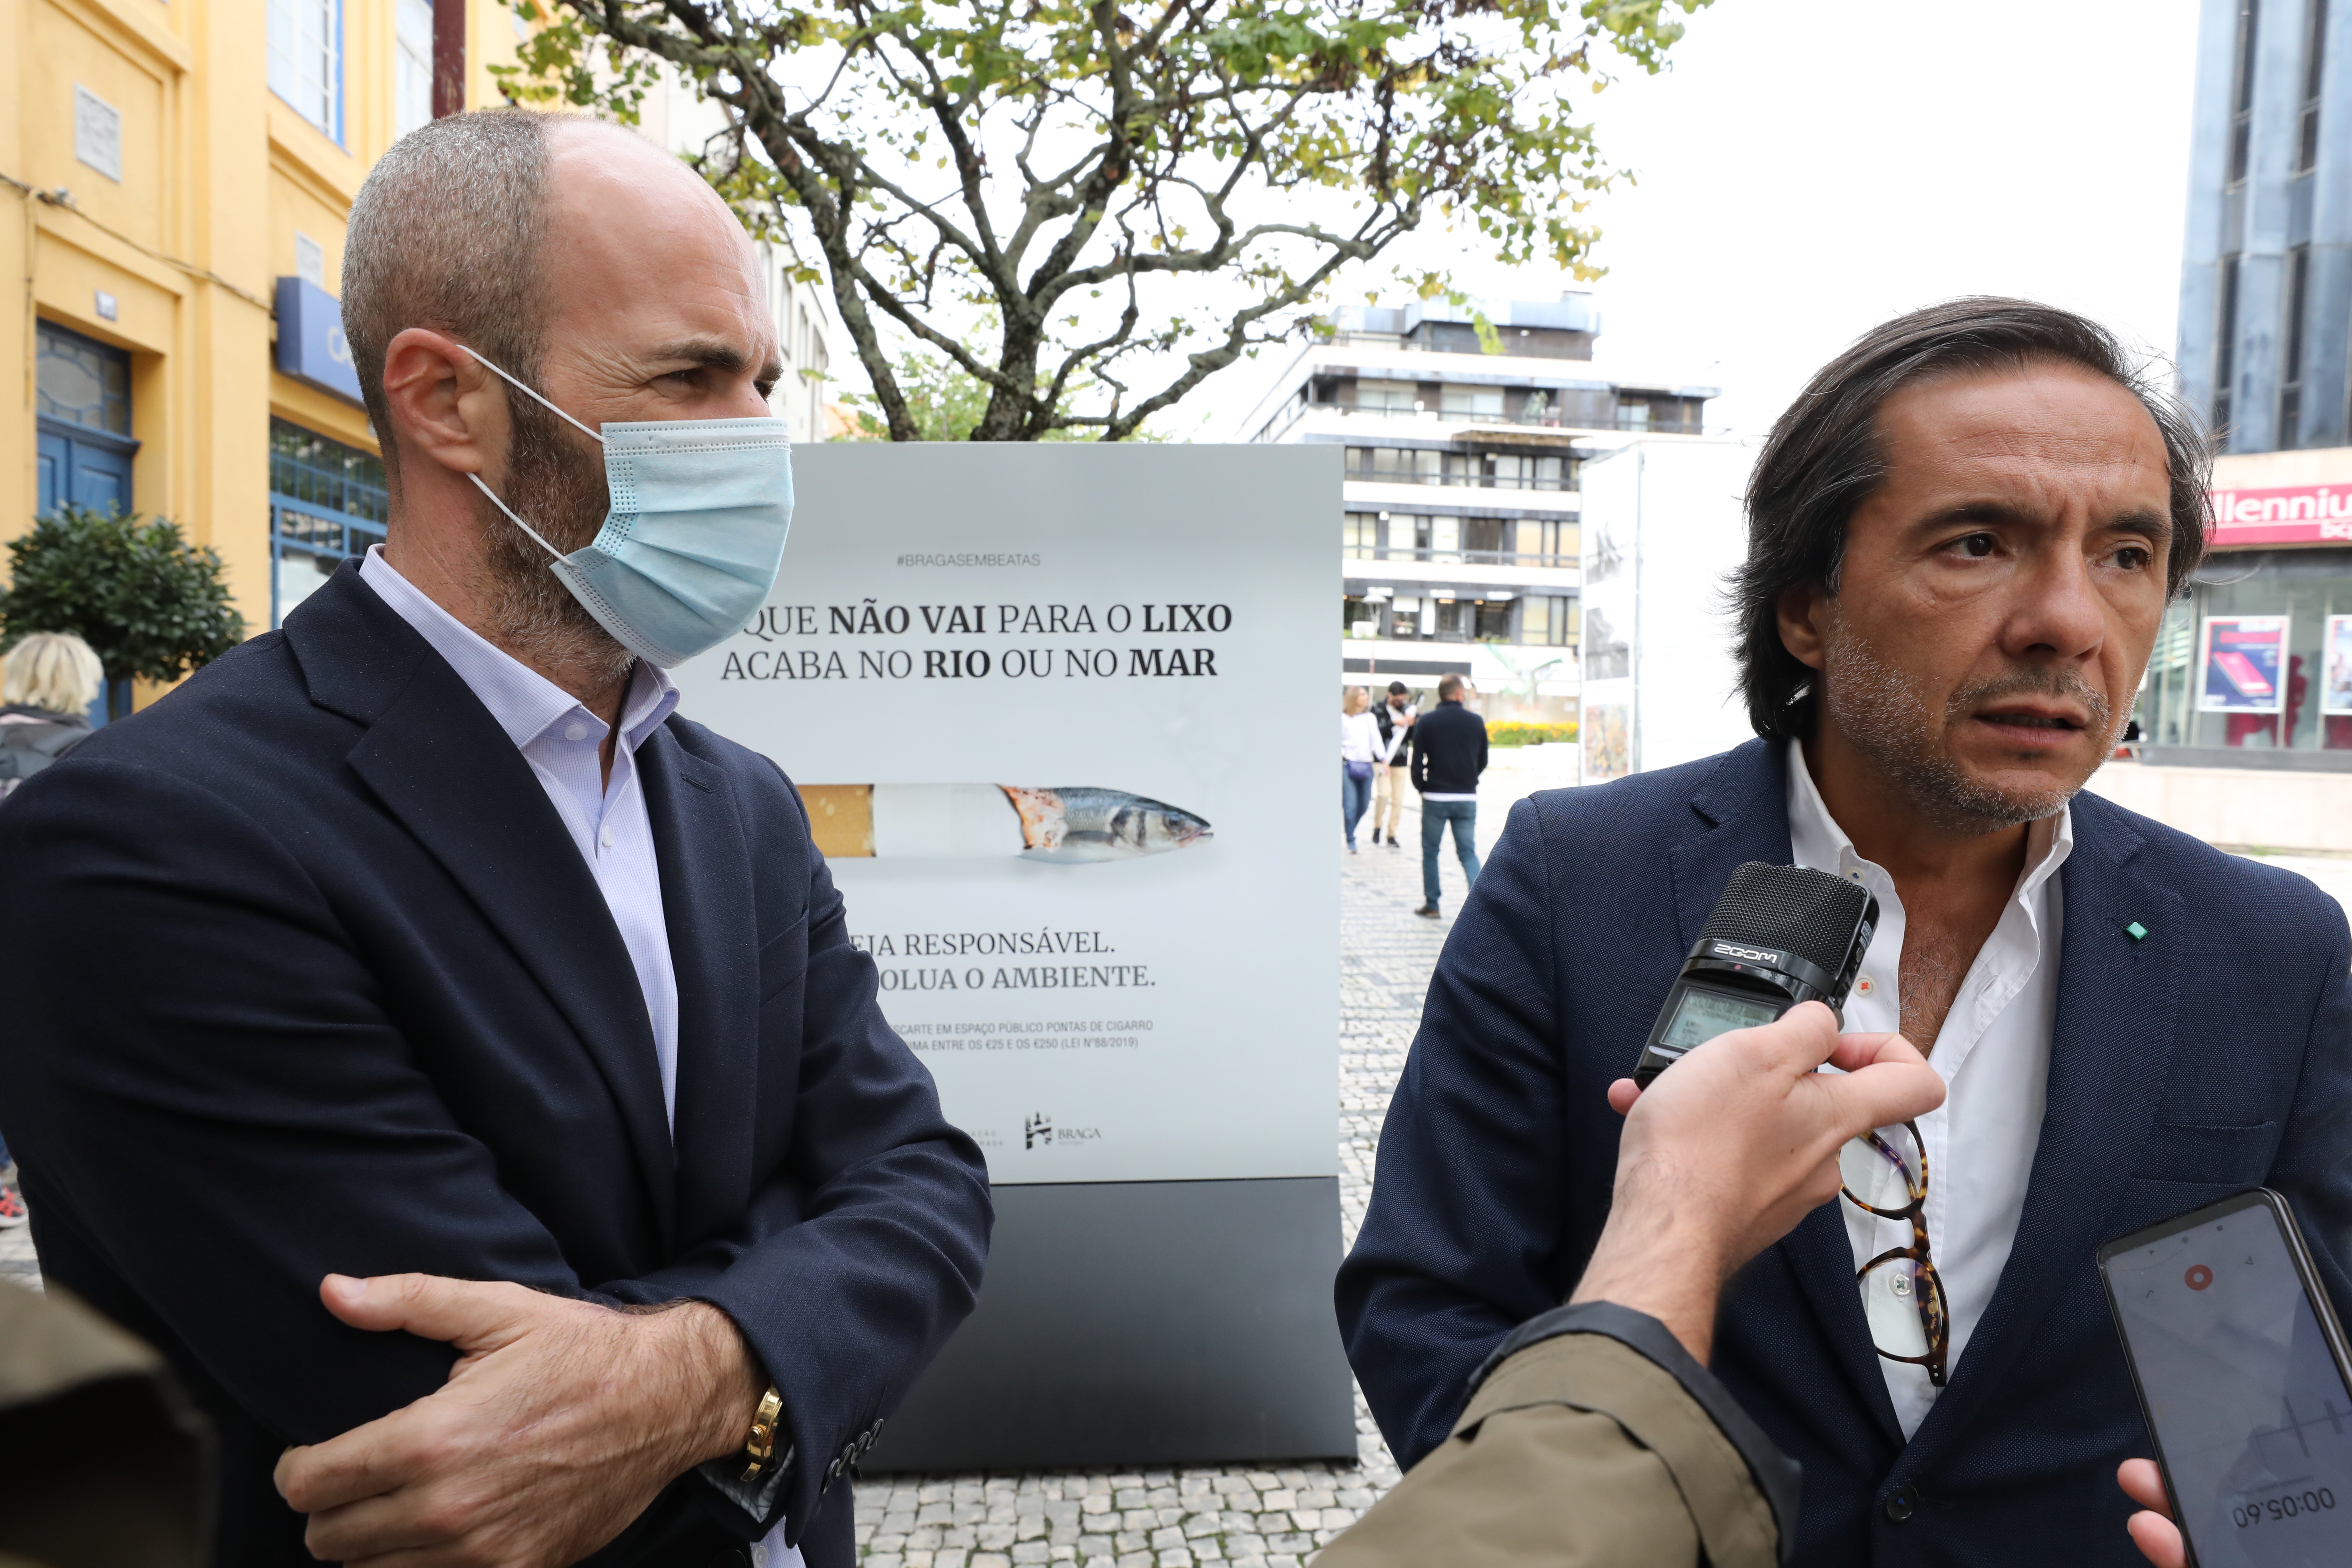 Braga lança campanha para eliminar pontas de cigarro deitadas ao chão